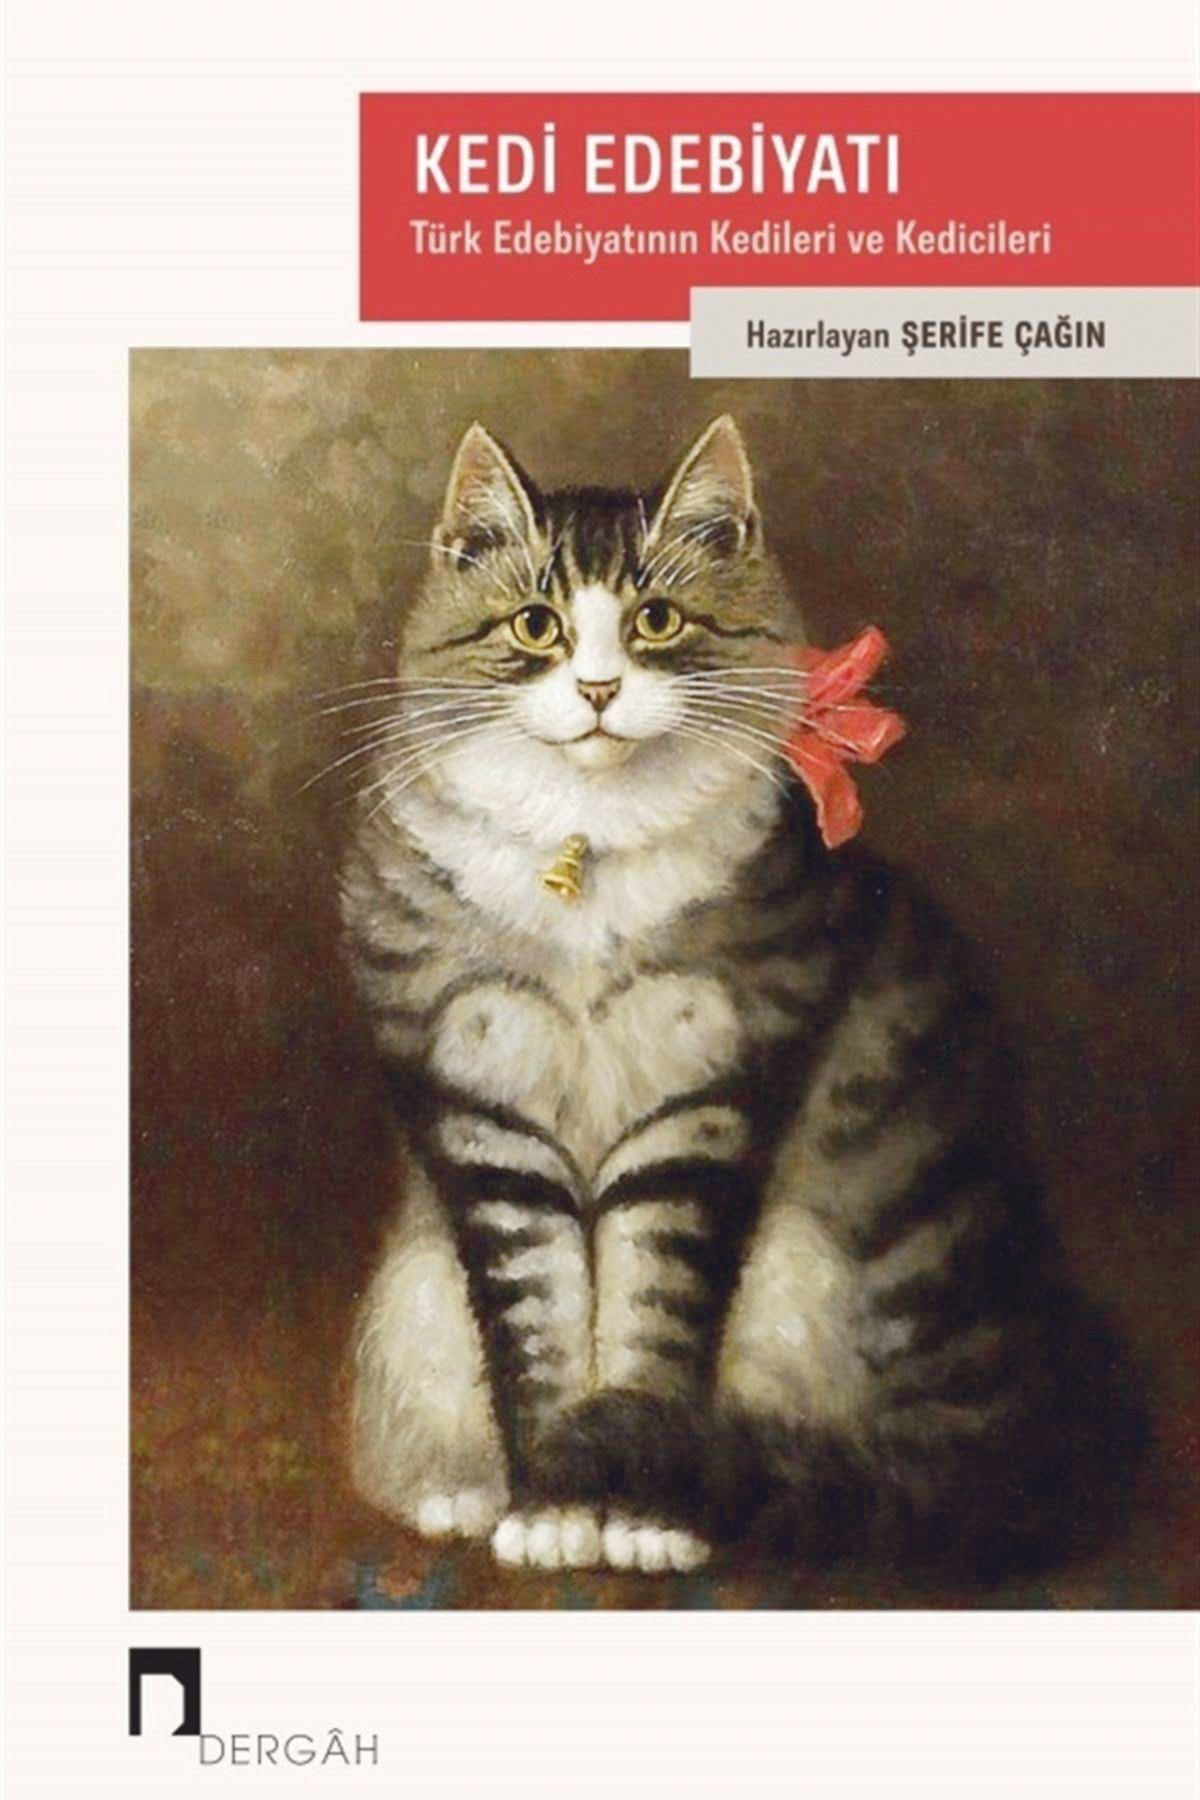 Kedi Edebiyatı: Türk Edebiyatının Kedileri ve Kedicileri Haz. Şerife Çağın Dergâh Yayınları 516 sayfa 2020